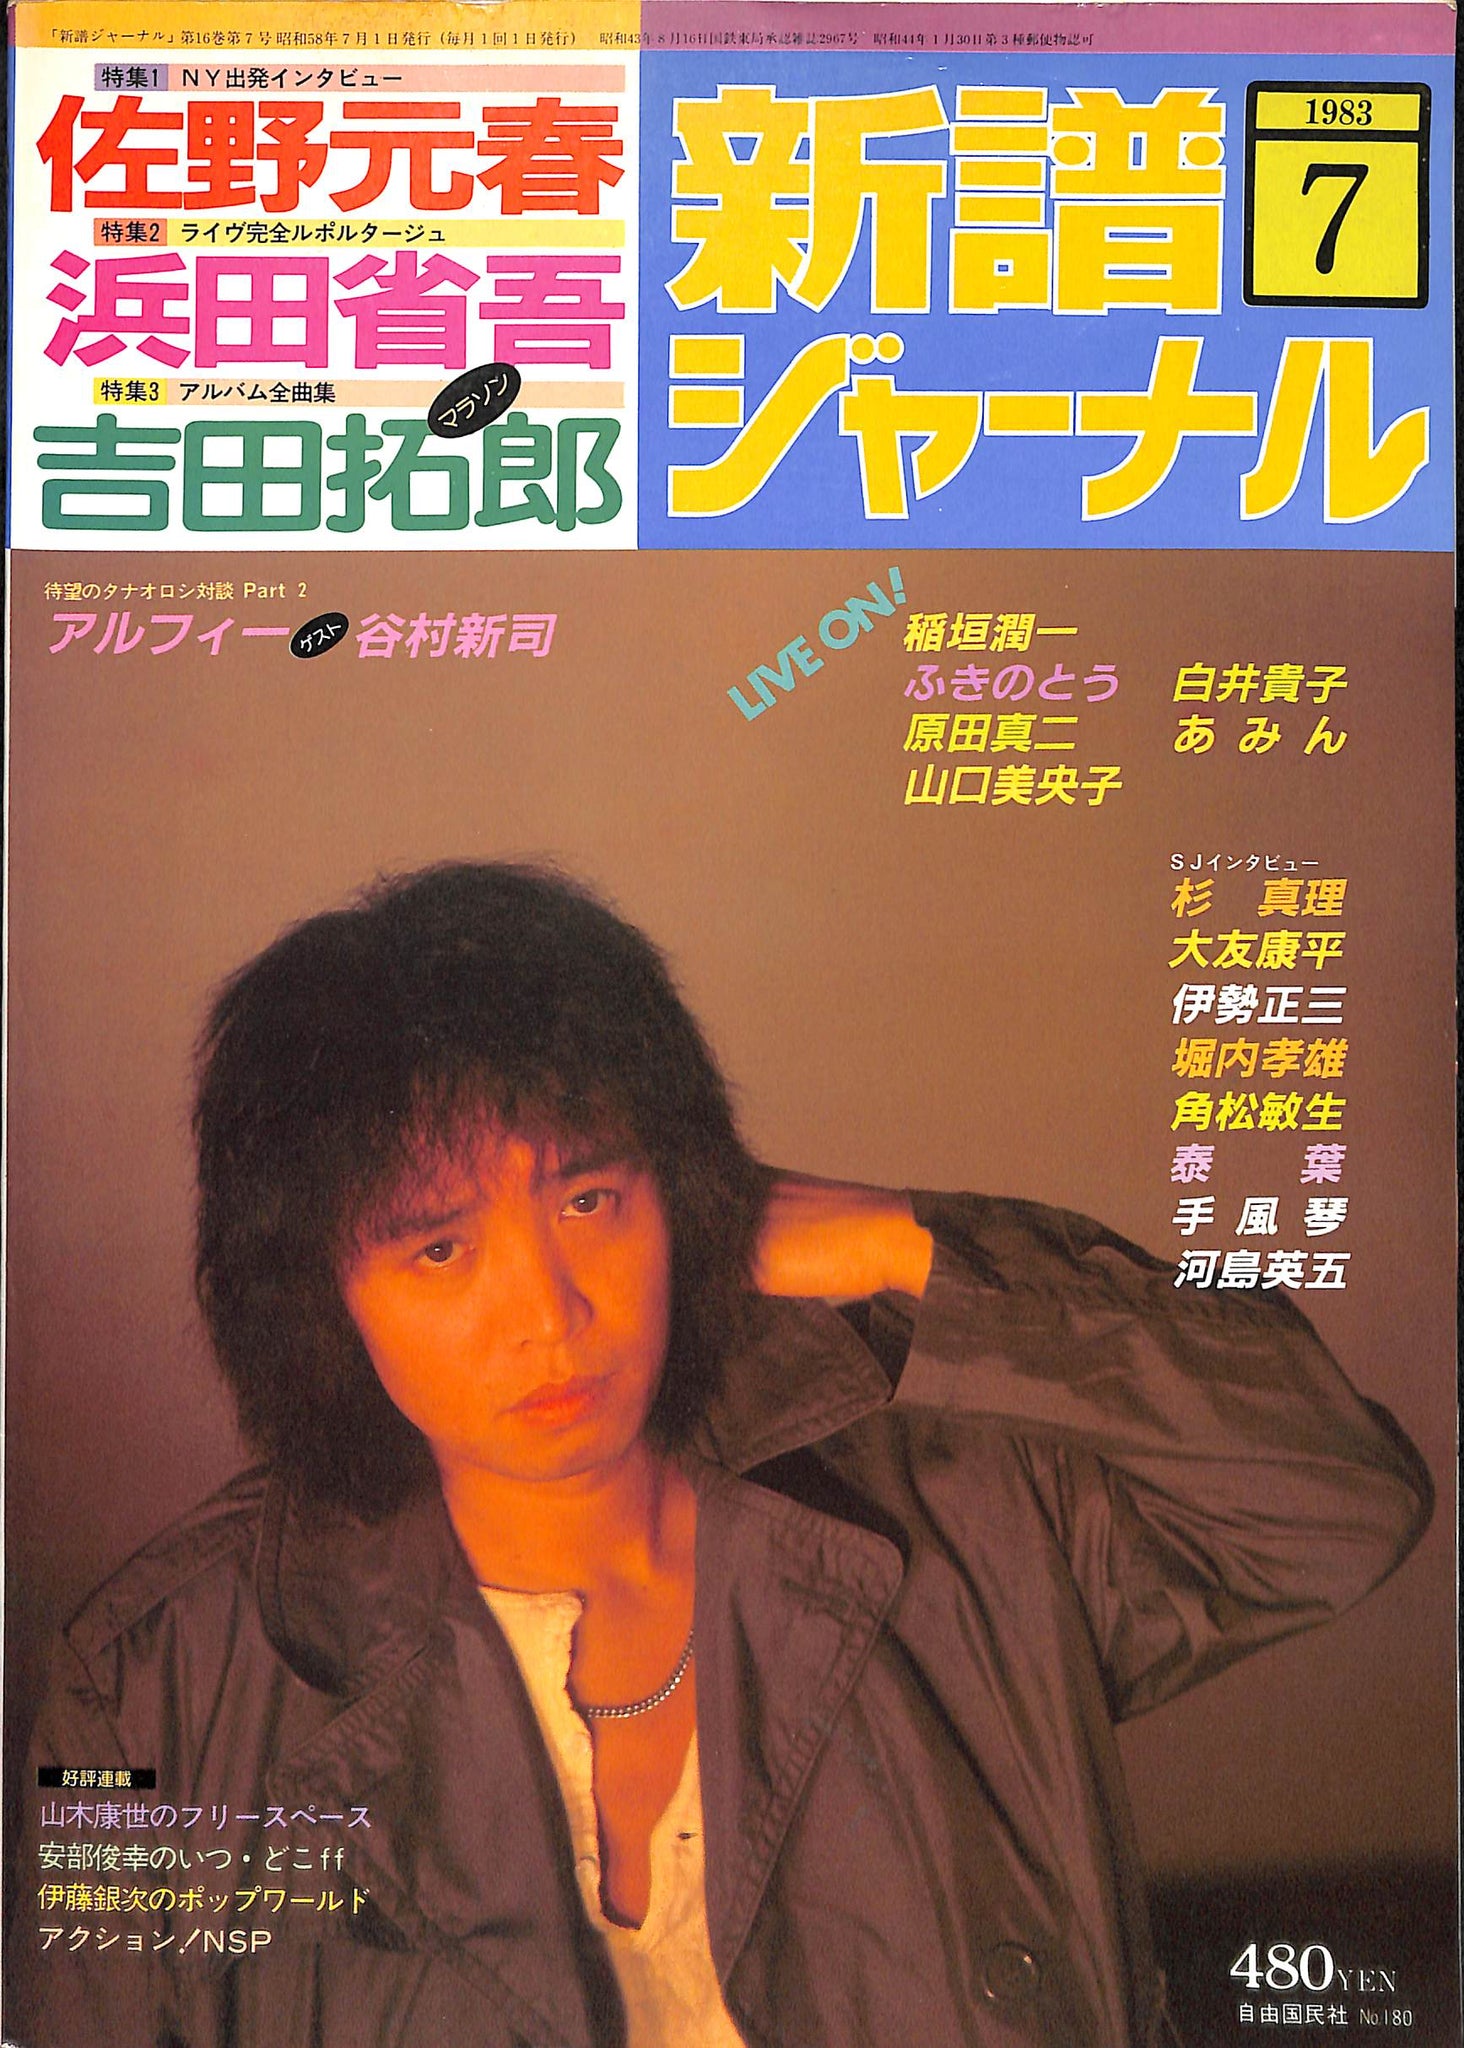 浜田省吾とは 音楽の人気 最新記事を集めました はてな